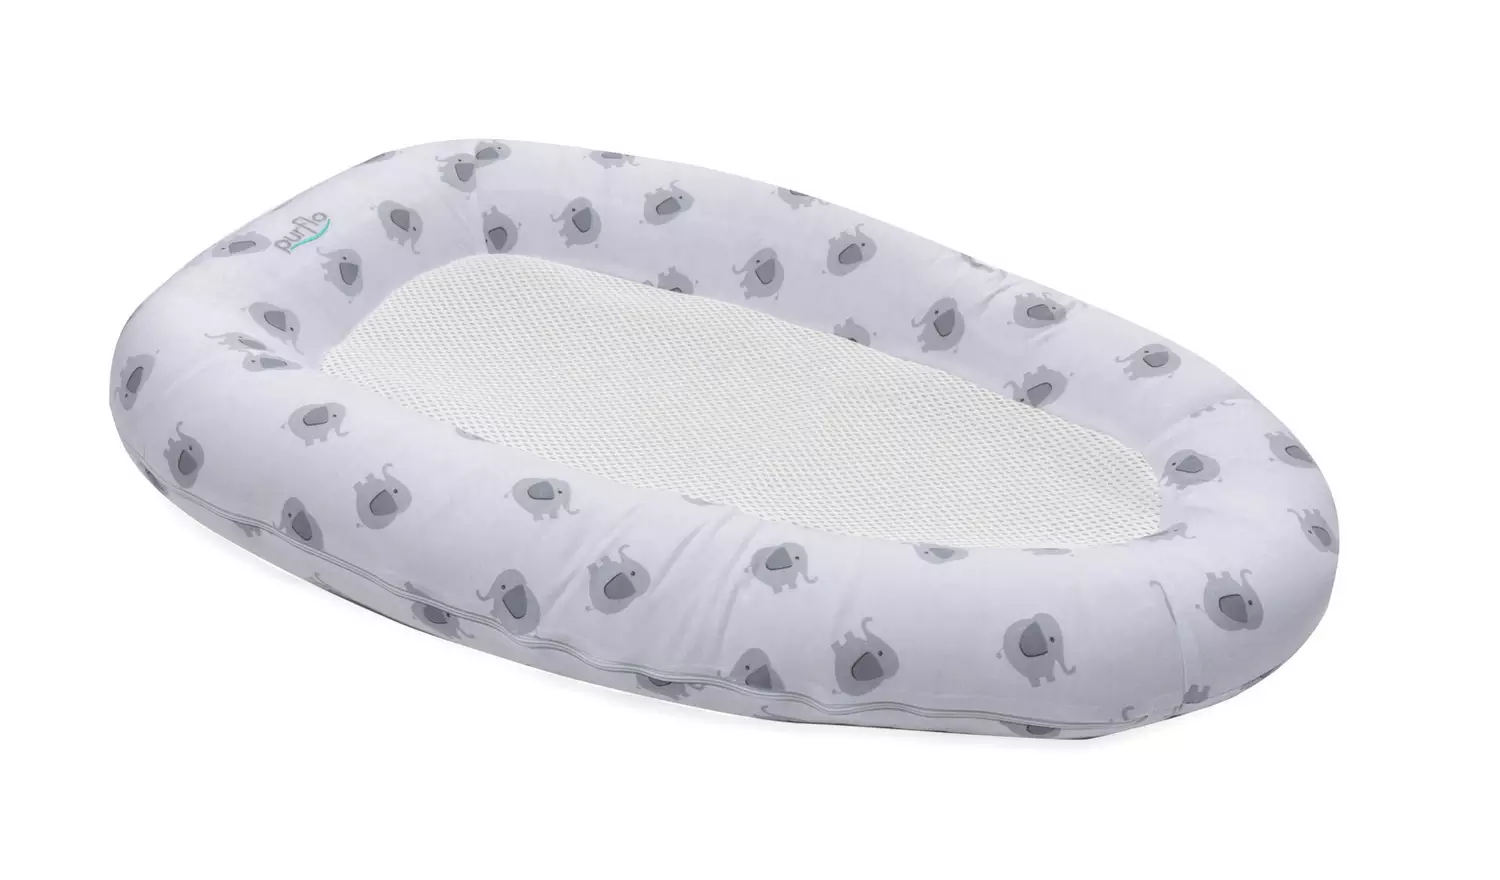 Purflo Breathable Nest Elephant Soft Toy